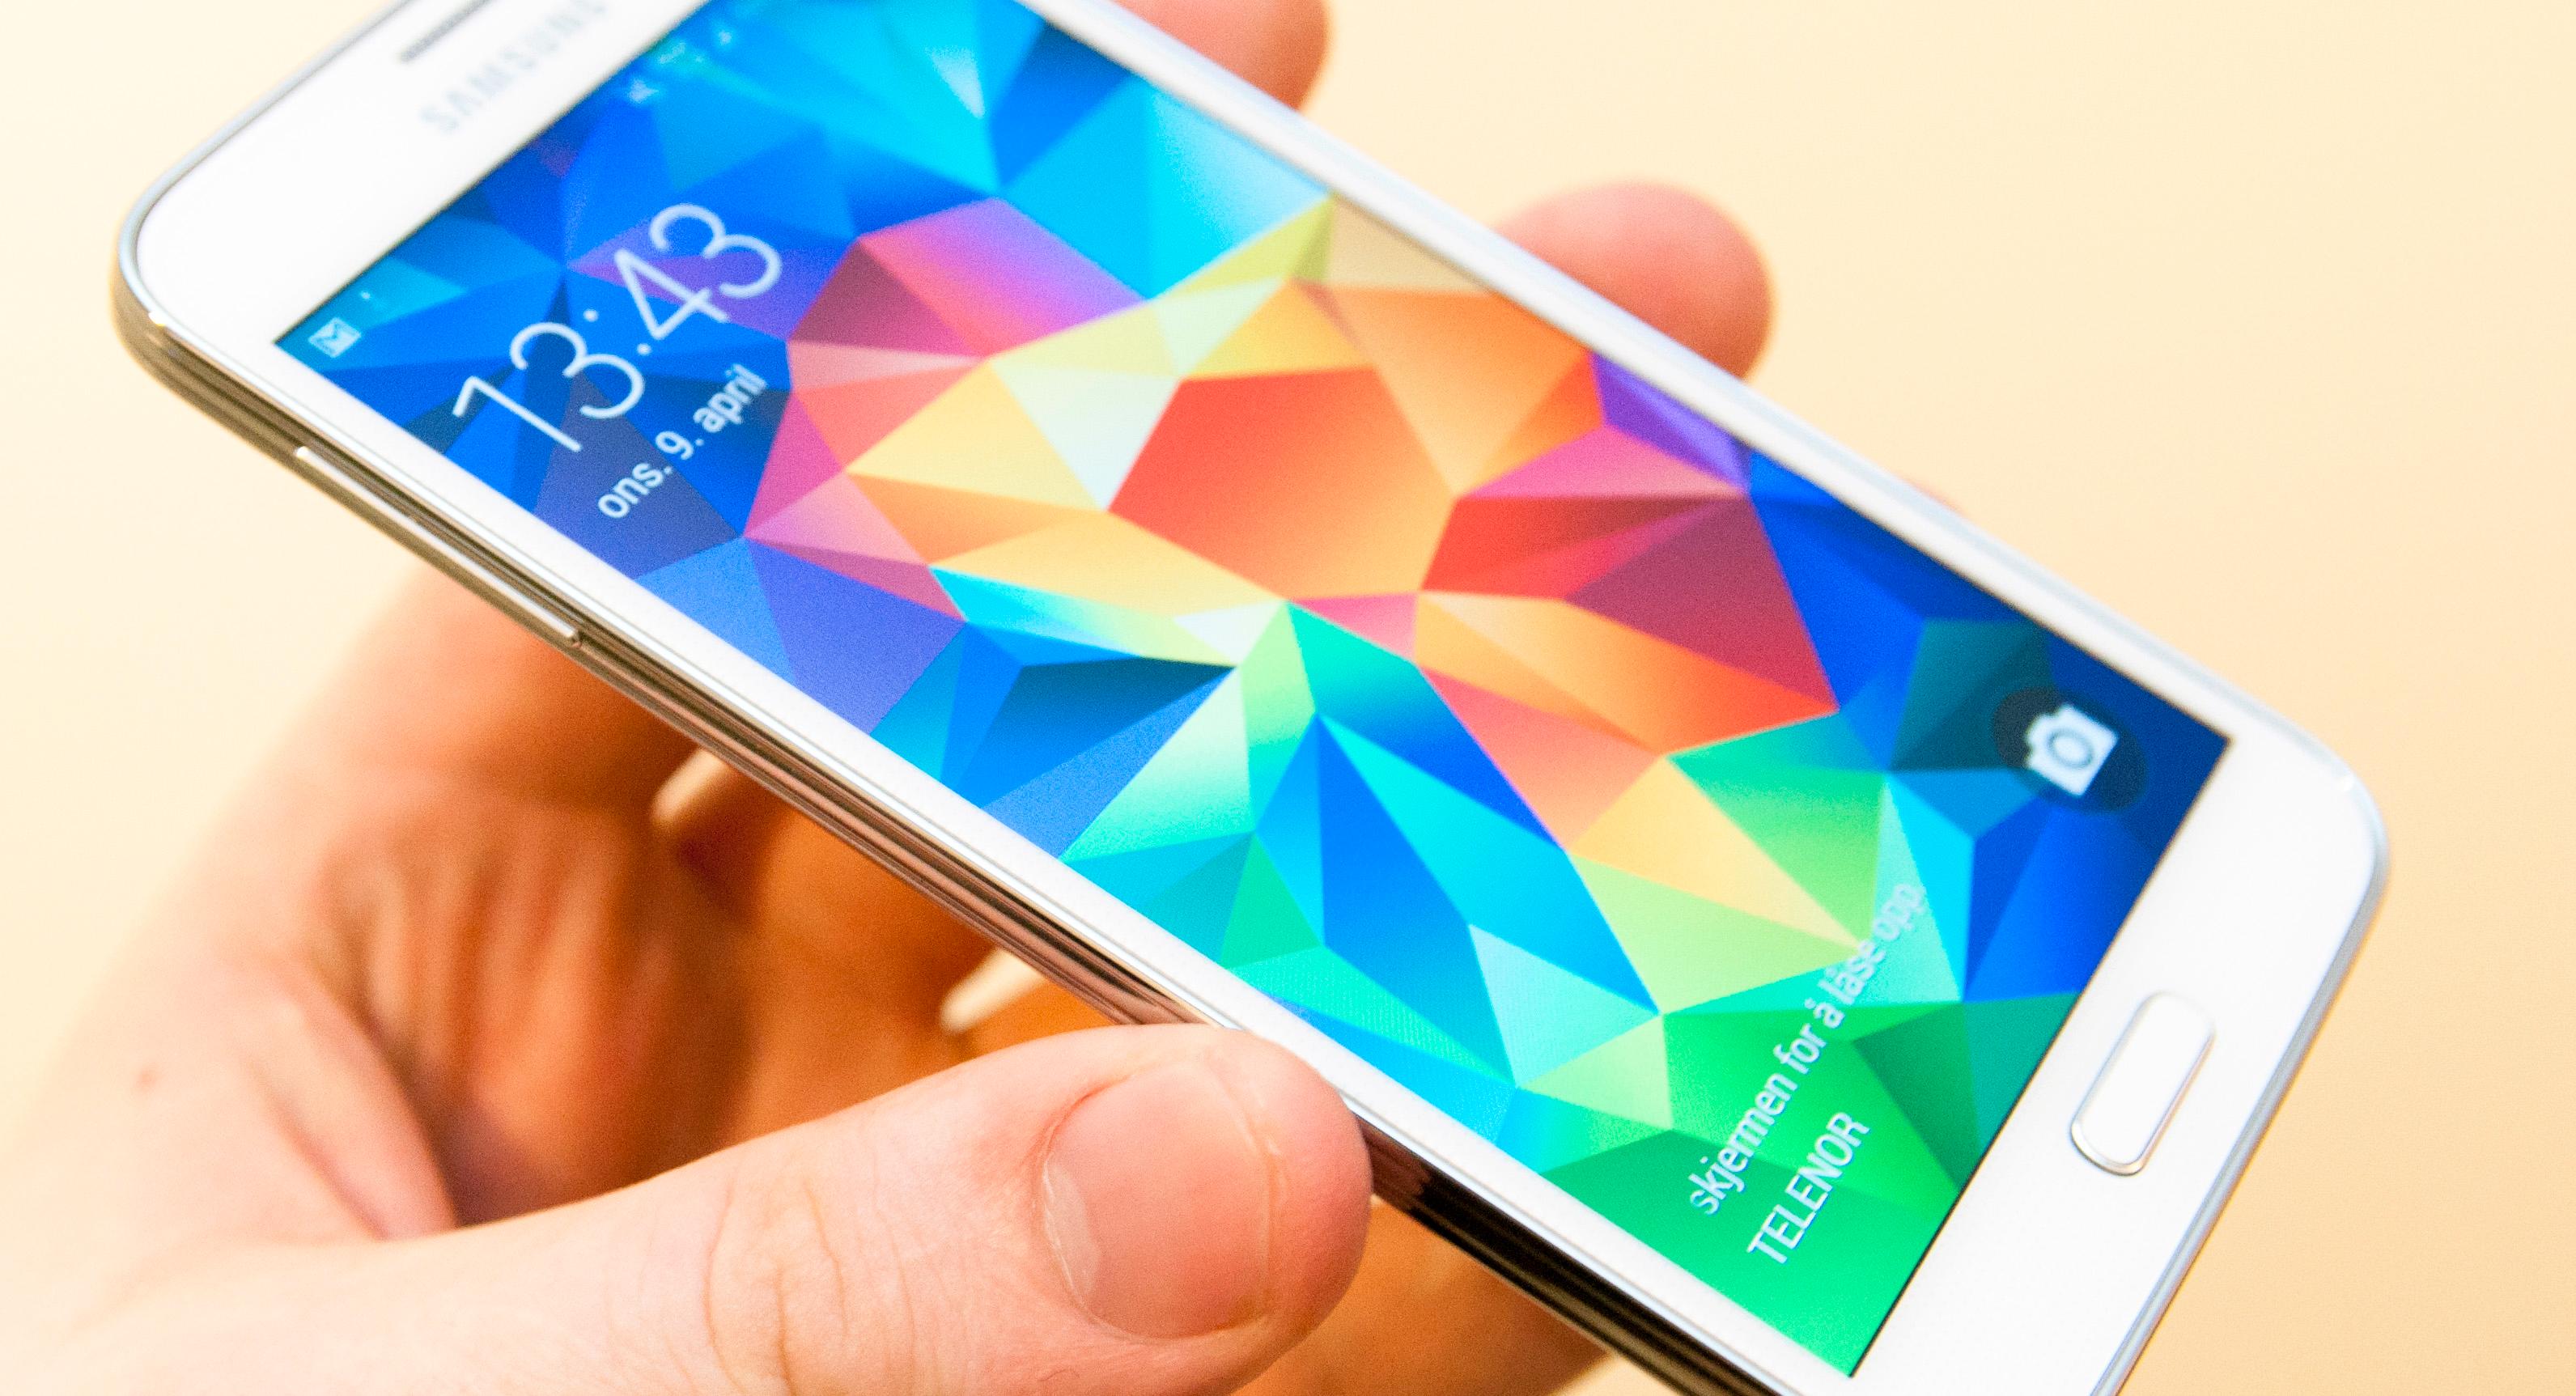 Originalen: Samsung har tatt over betydelige deler av mobilmarkedet med Galaxy-telefonene sine, men får støtt litt pepper for bruken av plast.Foto: Finn Jarle Kvalheim, Amobil.no